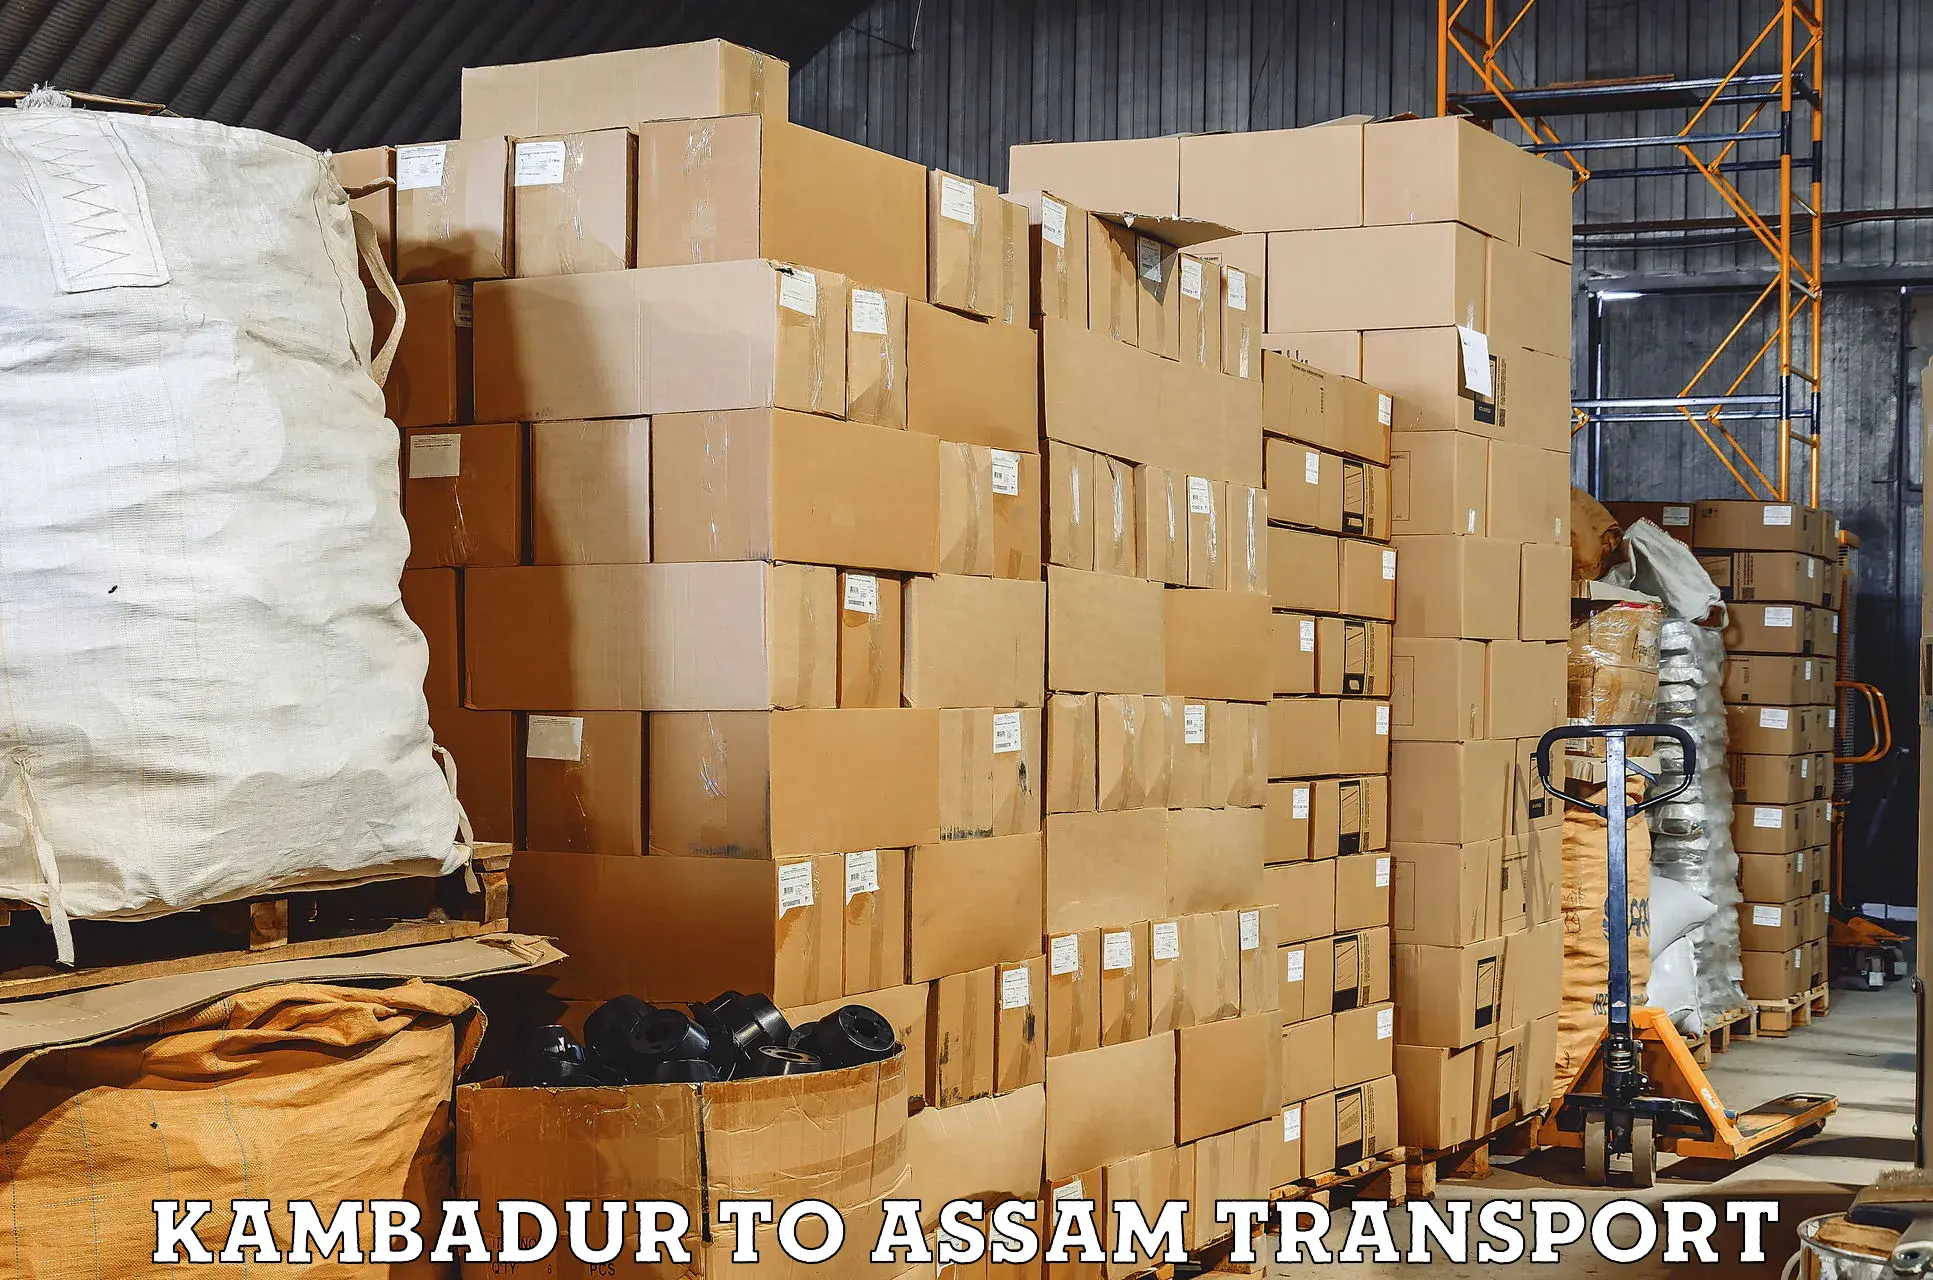 Transport in sharing Kambadur to Lakhipur